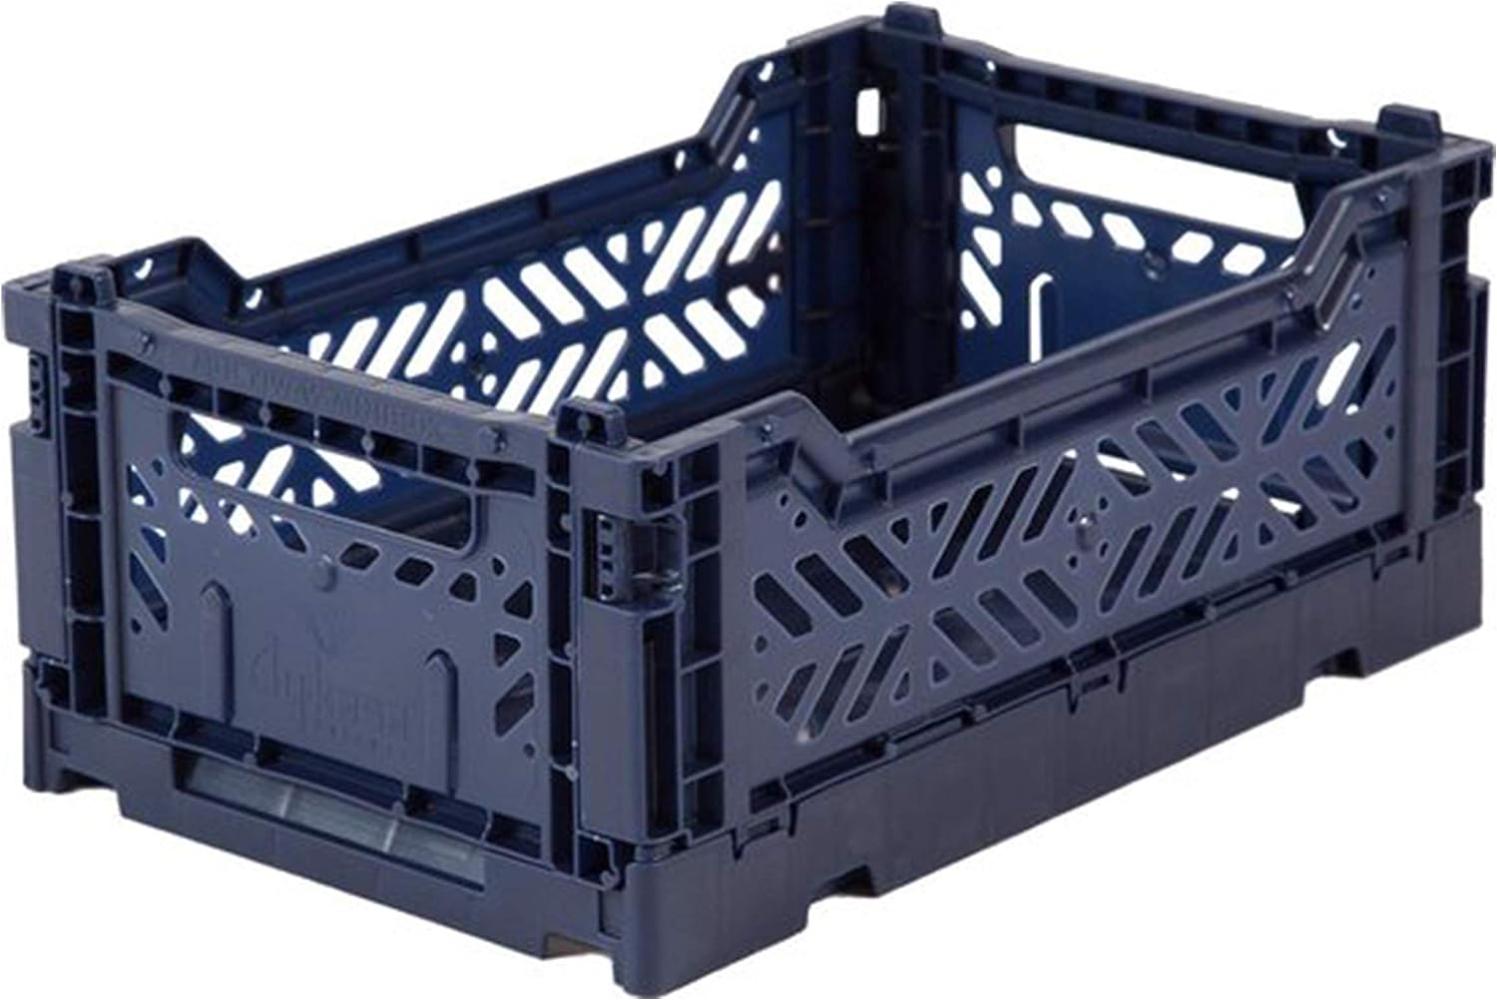 AY-KASA dunkelblaue, Faltbare Aufbewahrungsbox mit 26,6x17,1x10,5 cm und 4 Liter Volumen - Bunte Klappbox zum Einkaufen und Aufbewahren - Stabile Faltbox aus Plastik - Organizer Box Bild 1